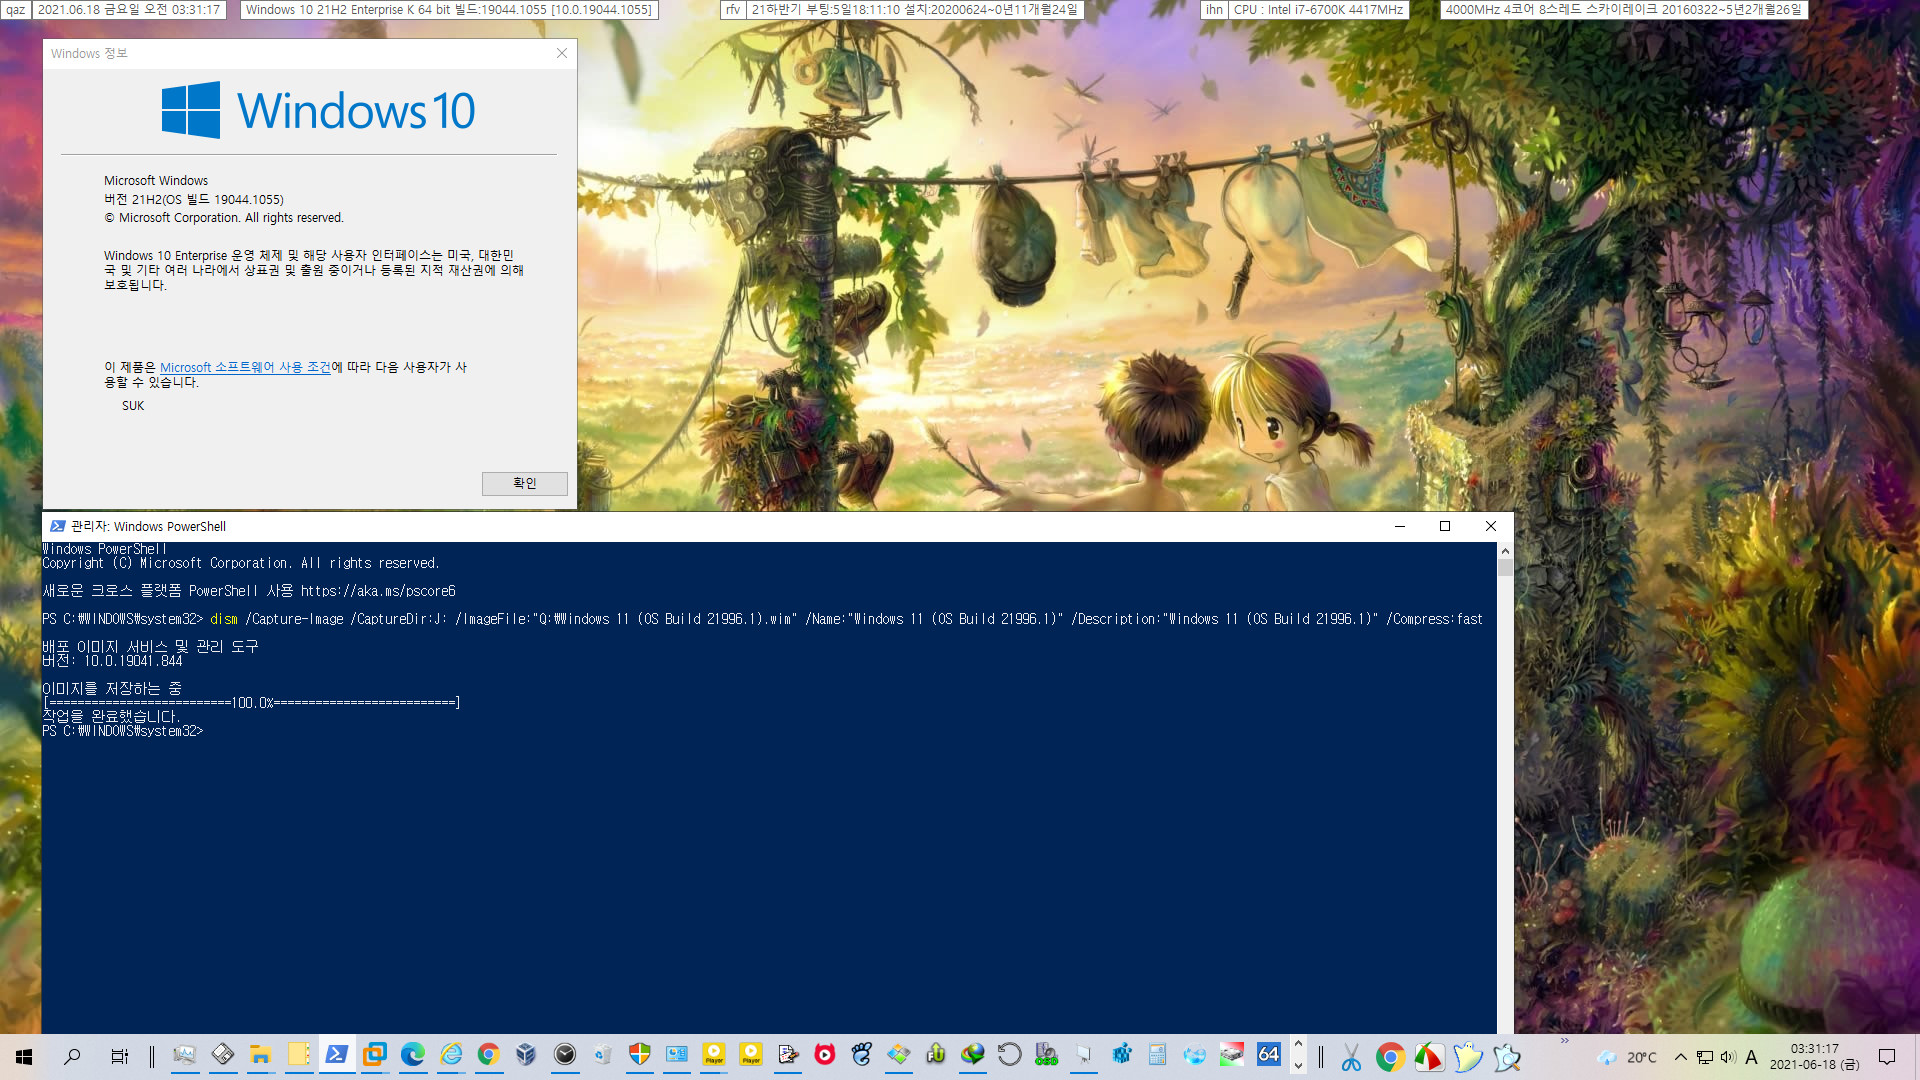 유출된 Windows 11 (OS Build 21996.1) - dism.exe 명령어로 wim 저장 잘 됩니다 2021-06-18_033117.jpg